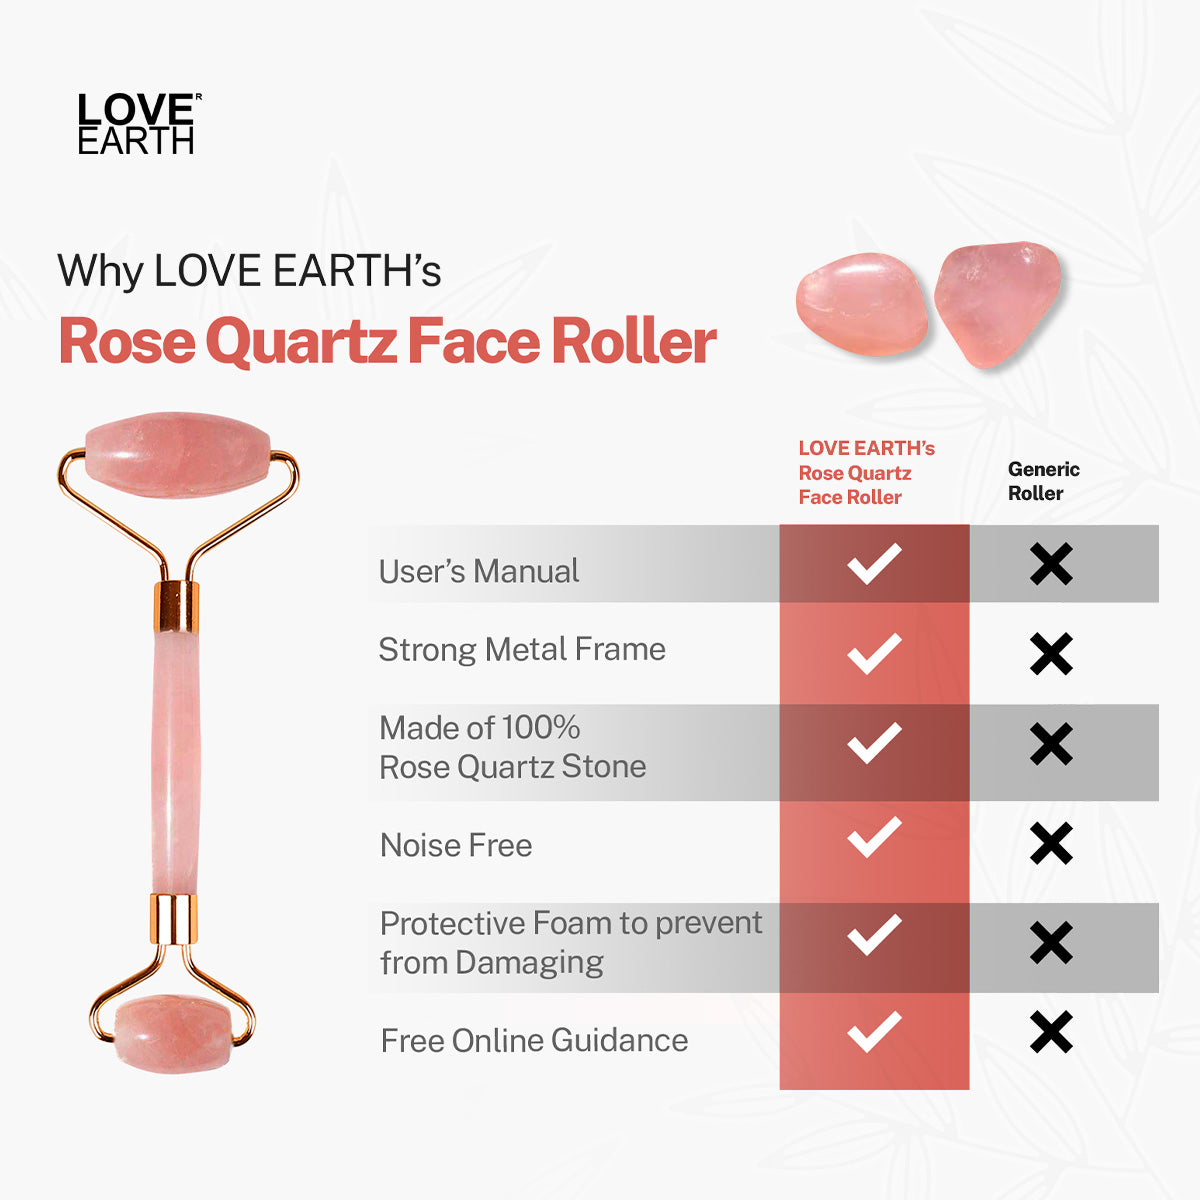 Love Earth’s Rose Quartz Face Roller